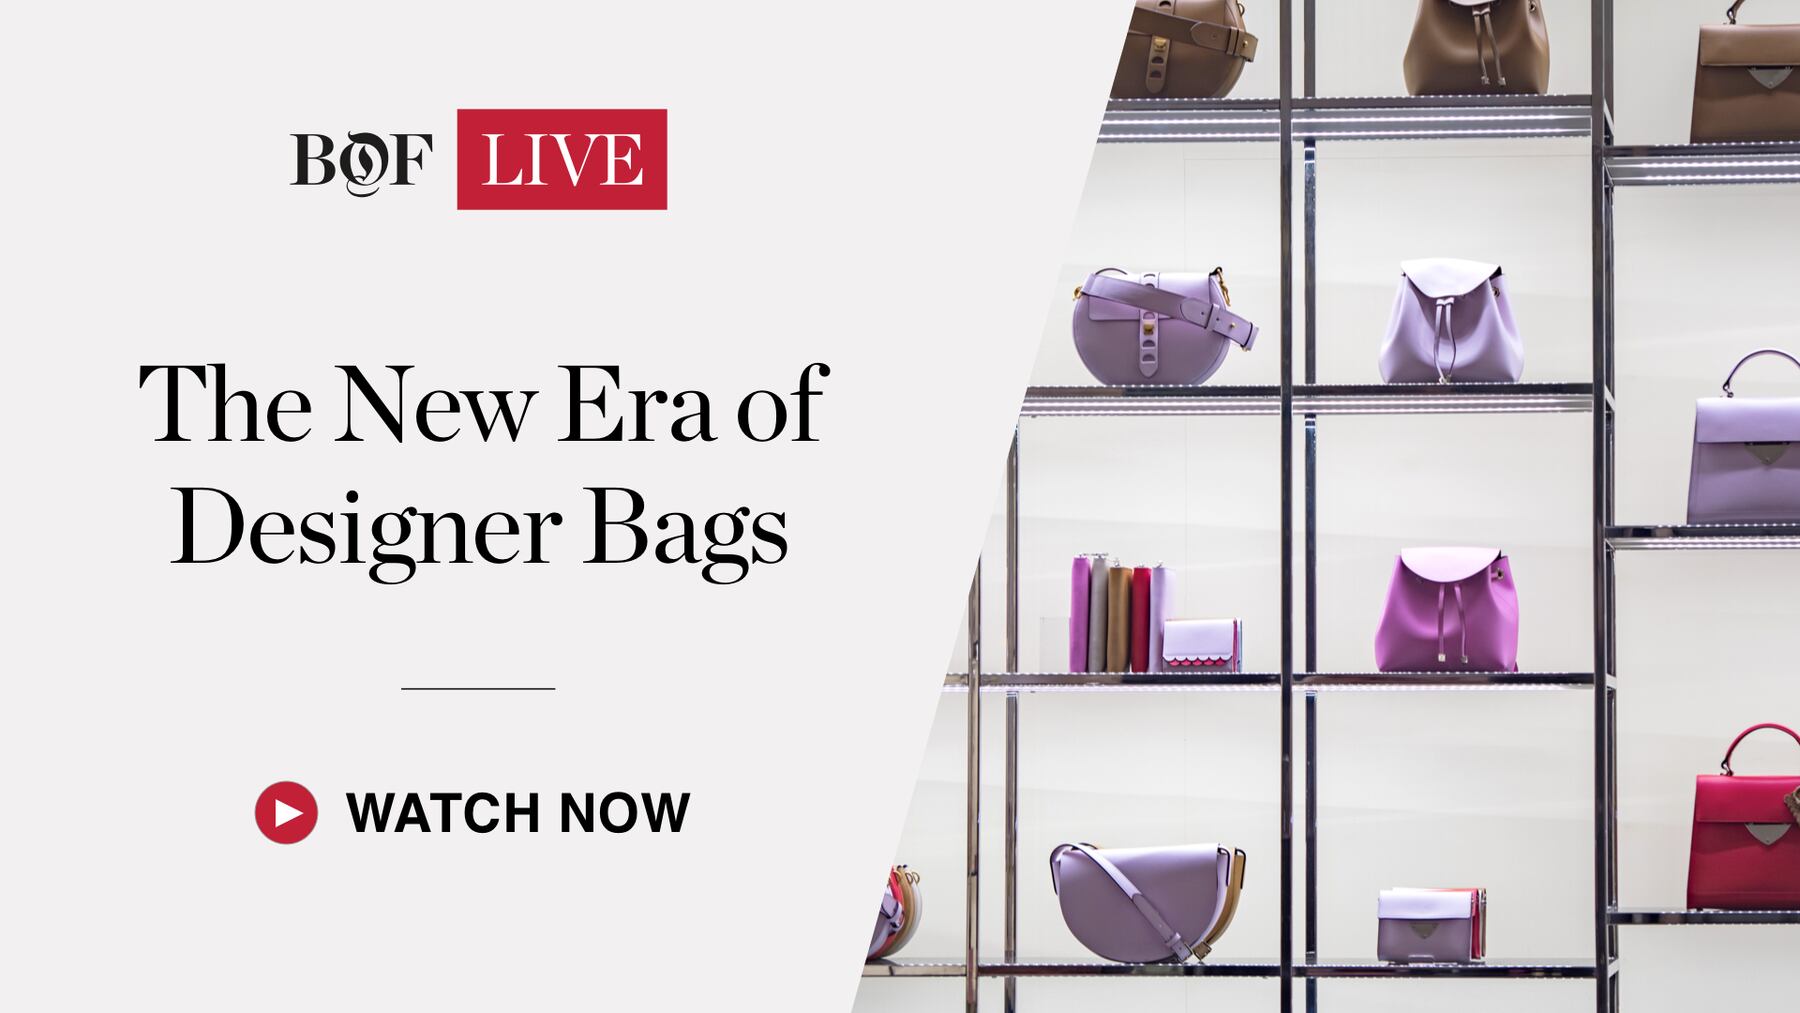 The New Era of Designer Bags